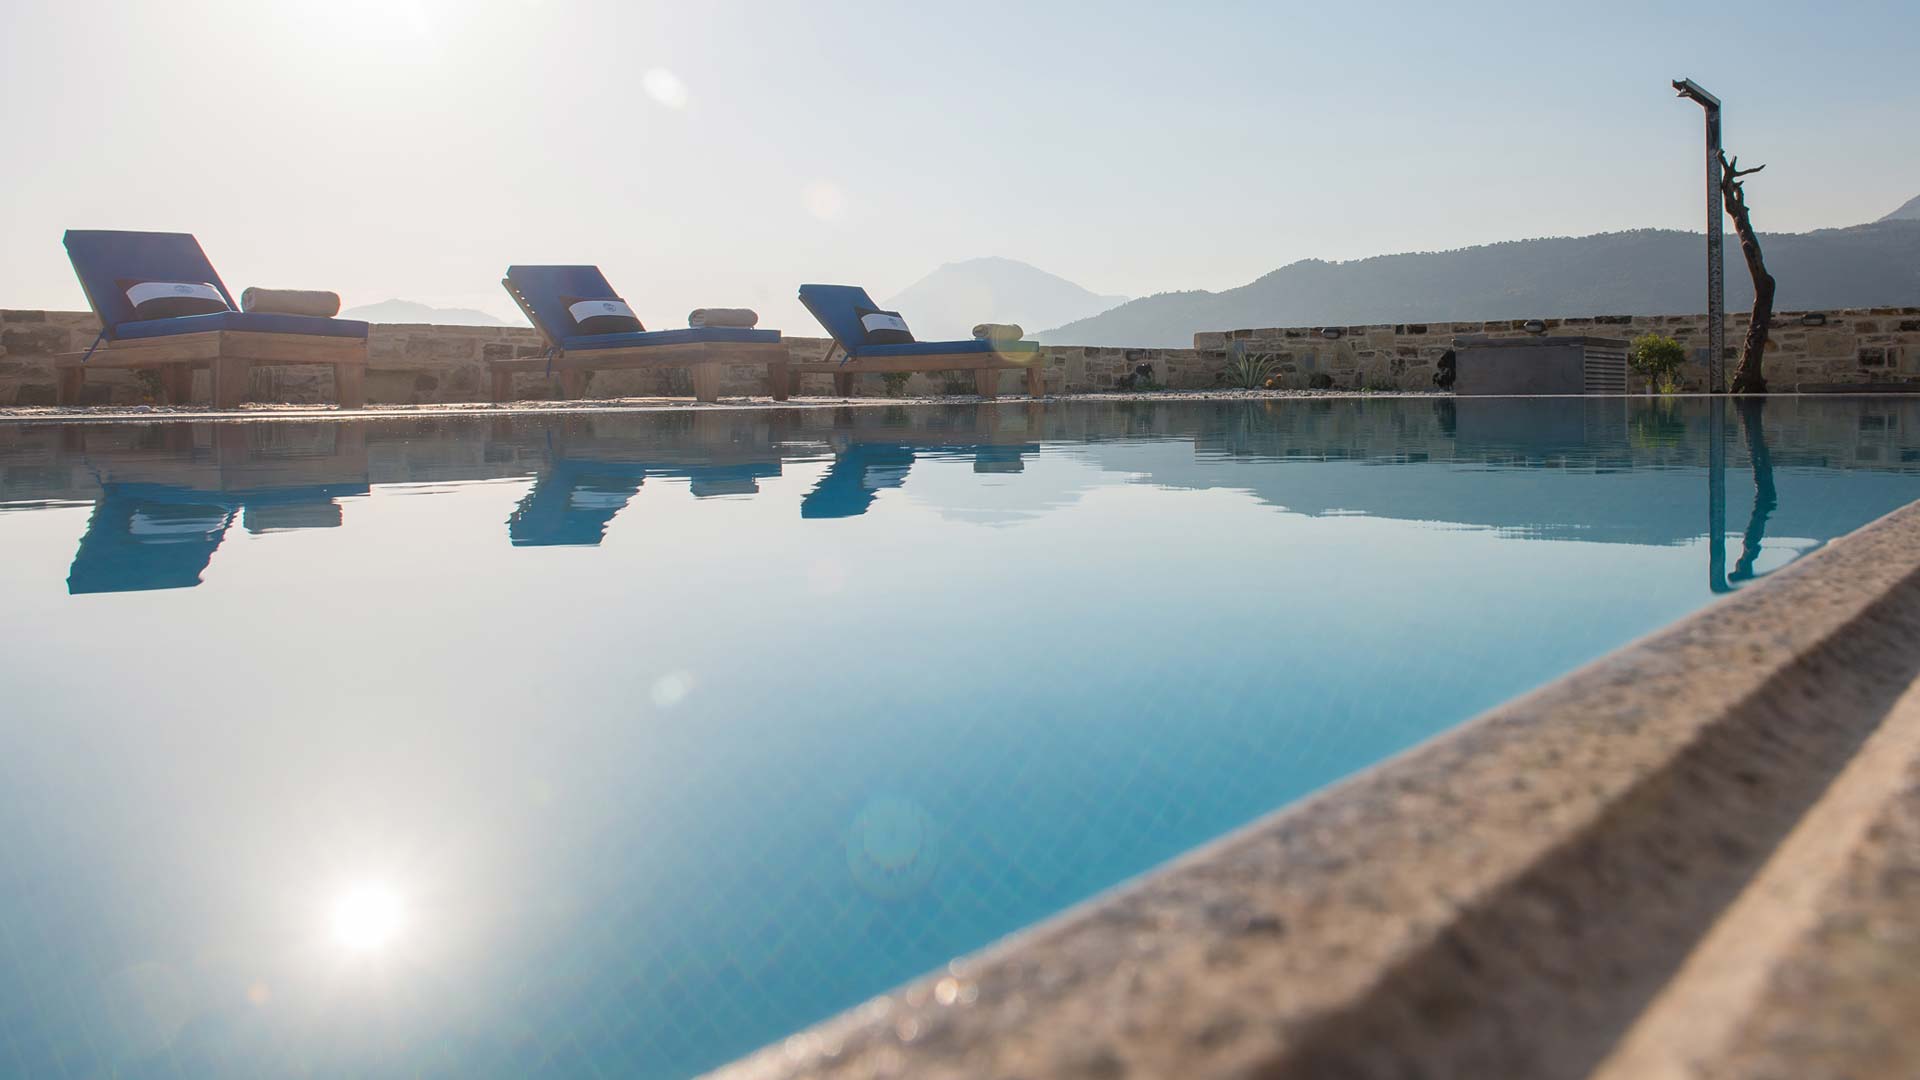 Luxury Villa Zeus and Dione, Lagolio South Crete